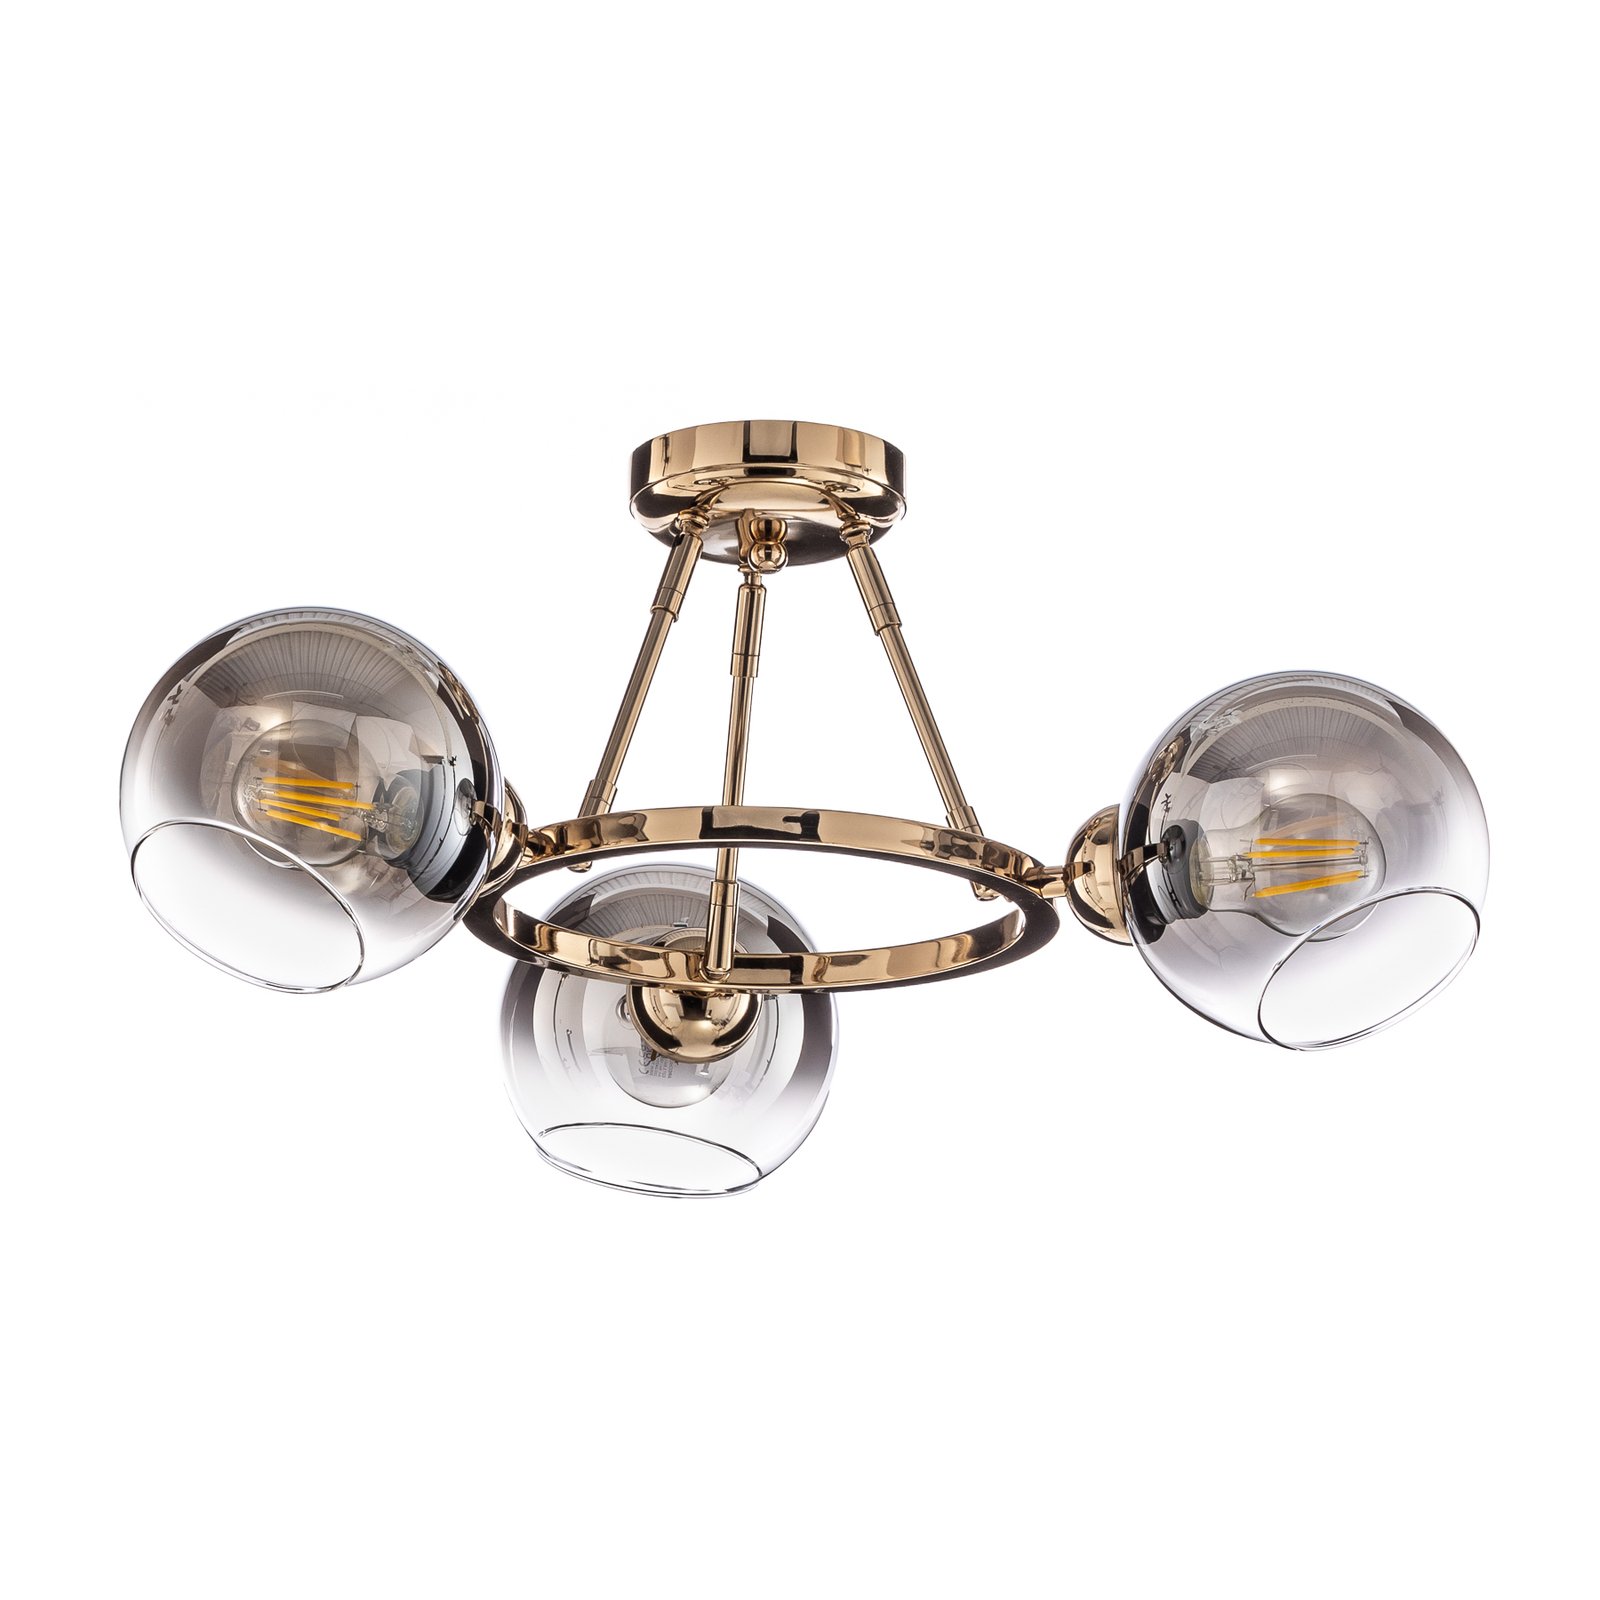 Ranko ceiling light, gold/chrome, 3-bulb